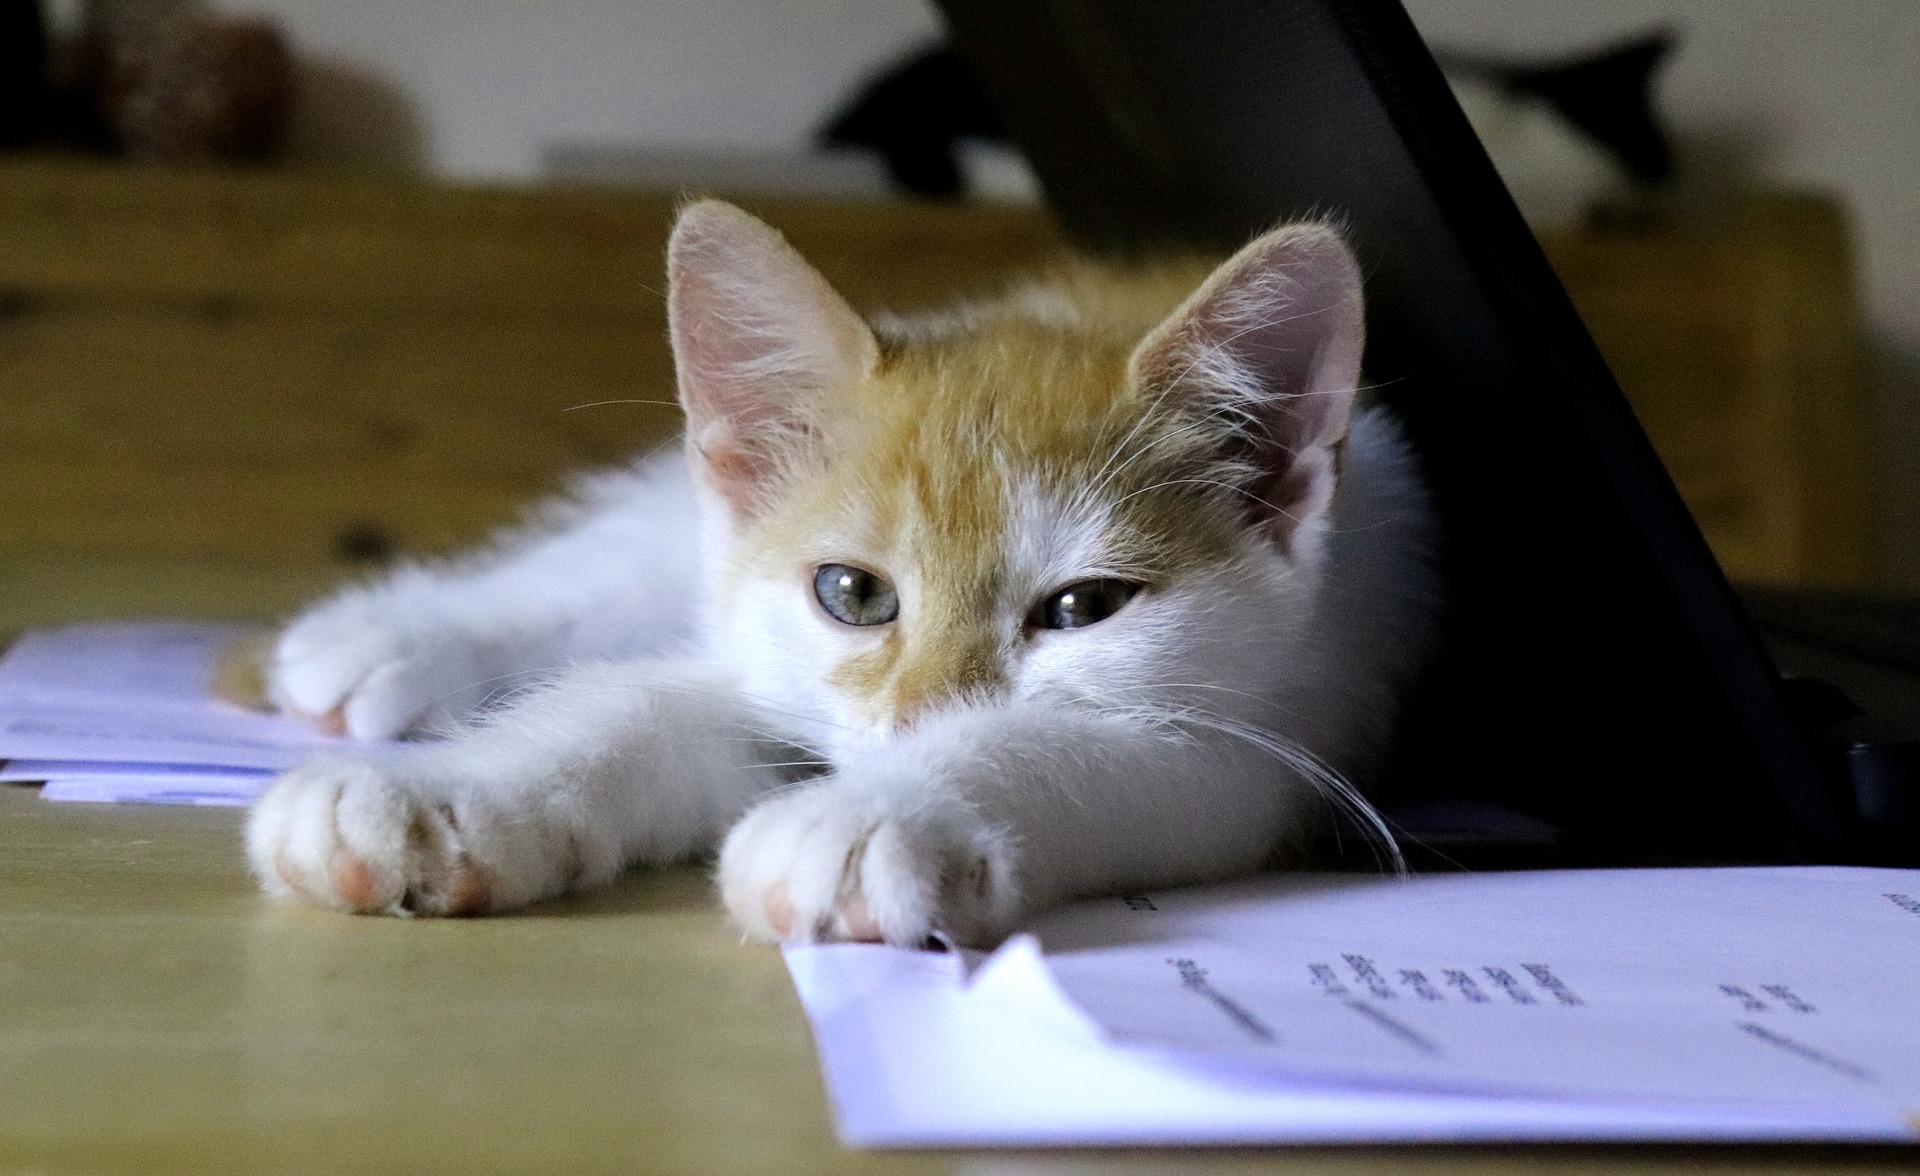 Tierversicherung für Katzen: 6 häufige Irrtümer